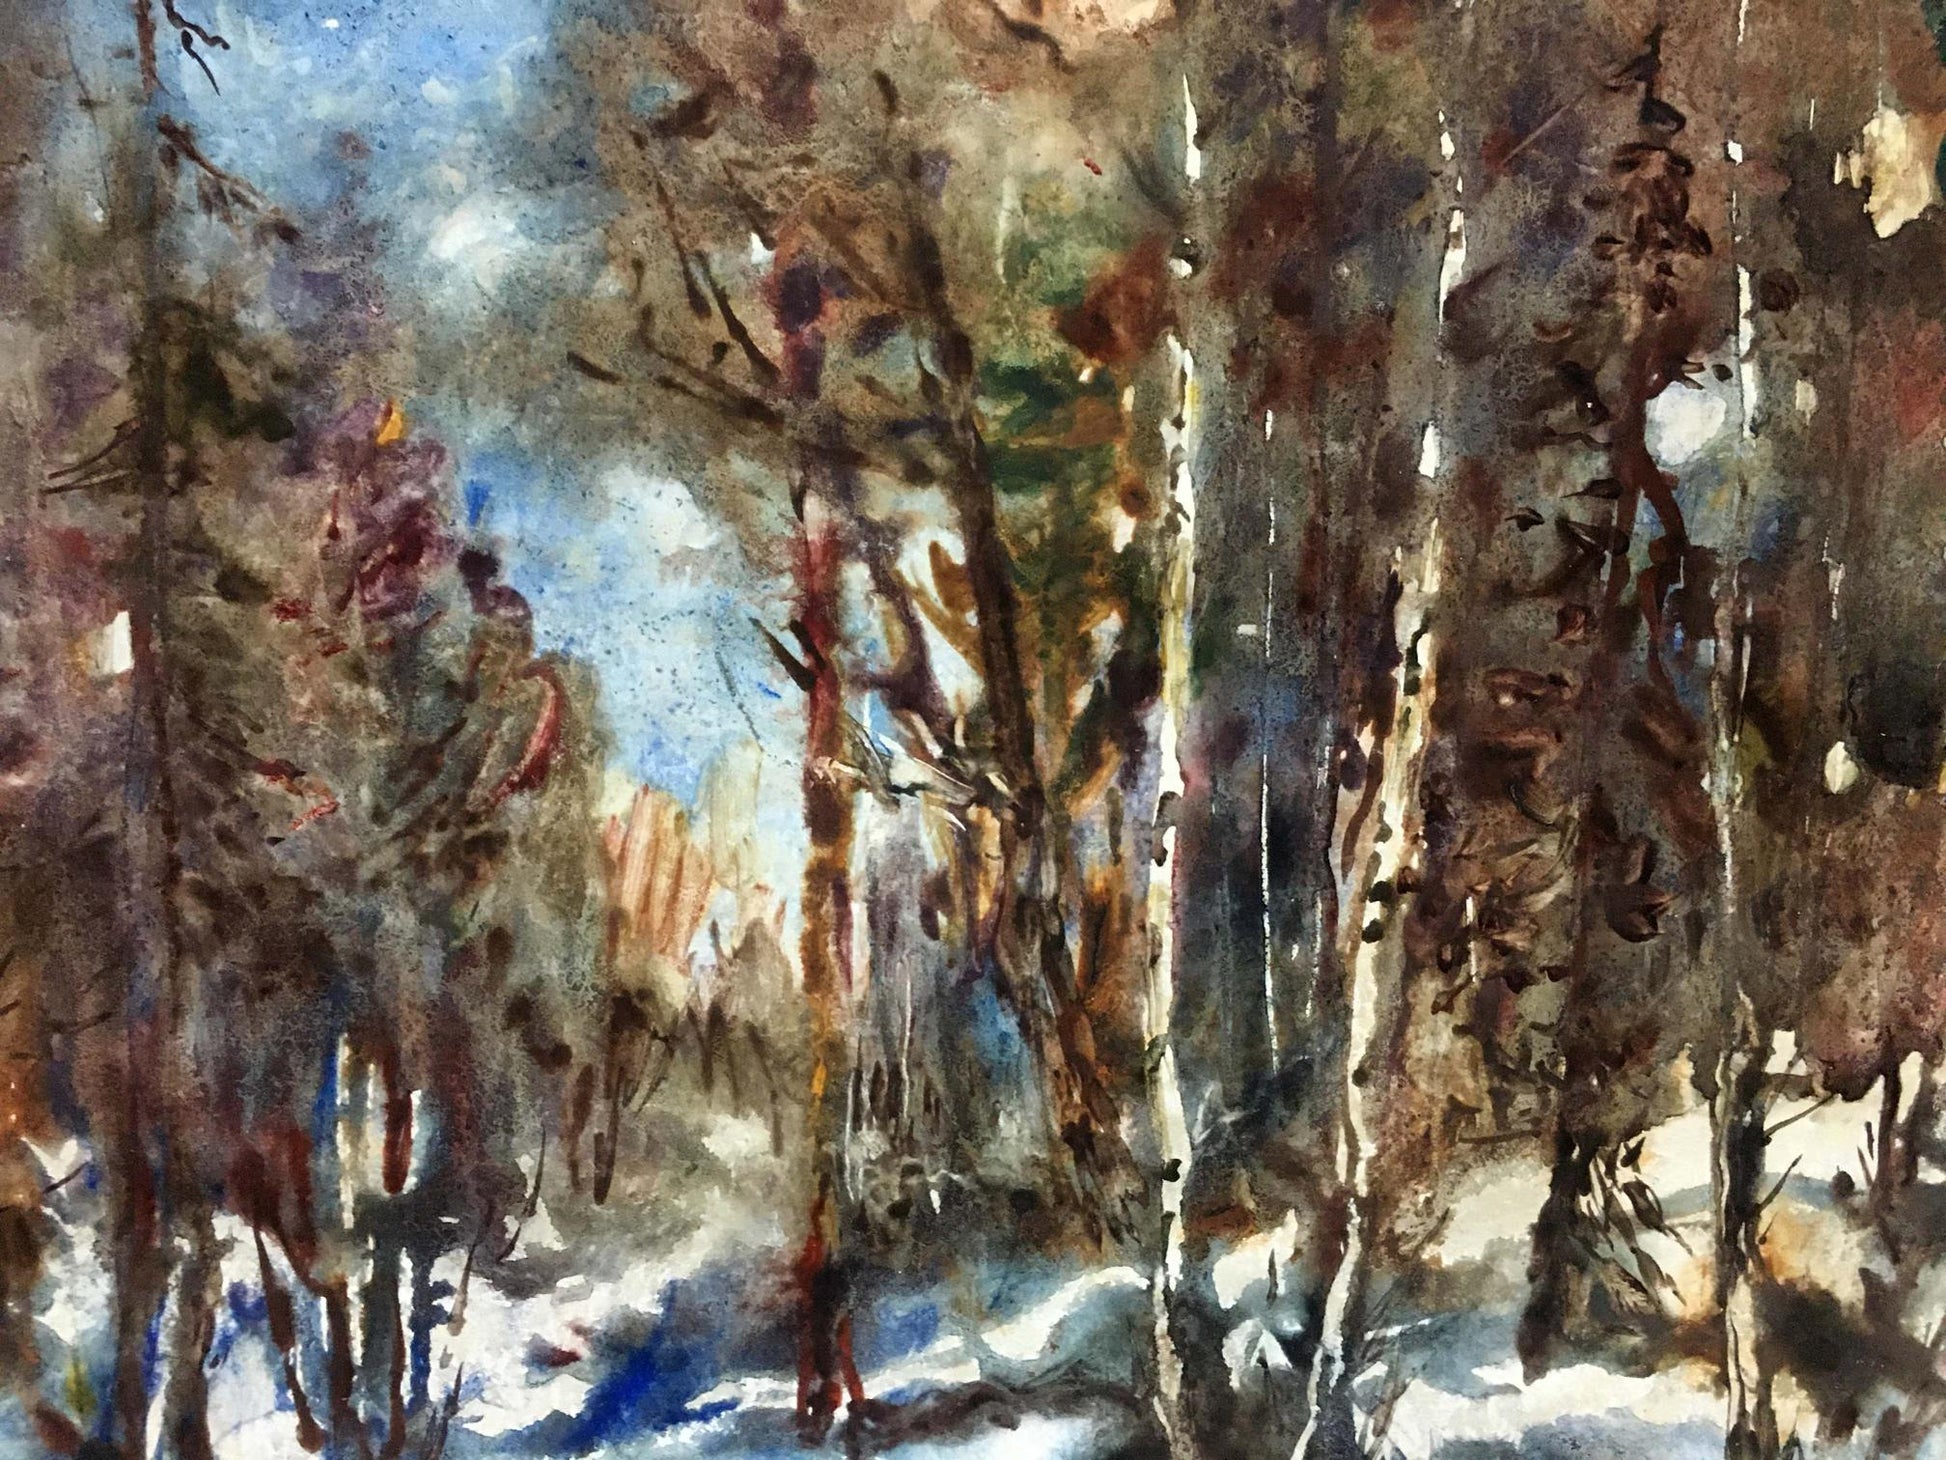 Yakov Alexandrovich Basov's artistic rendition of a winter scene in oil